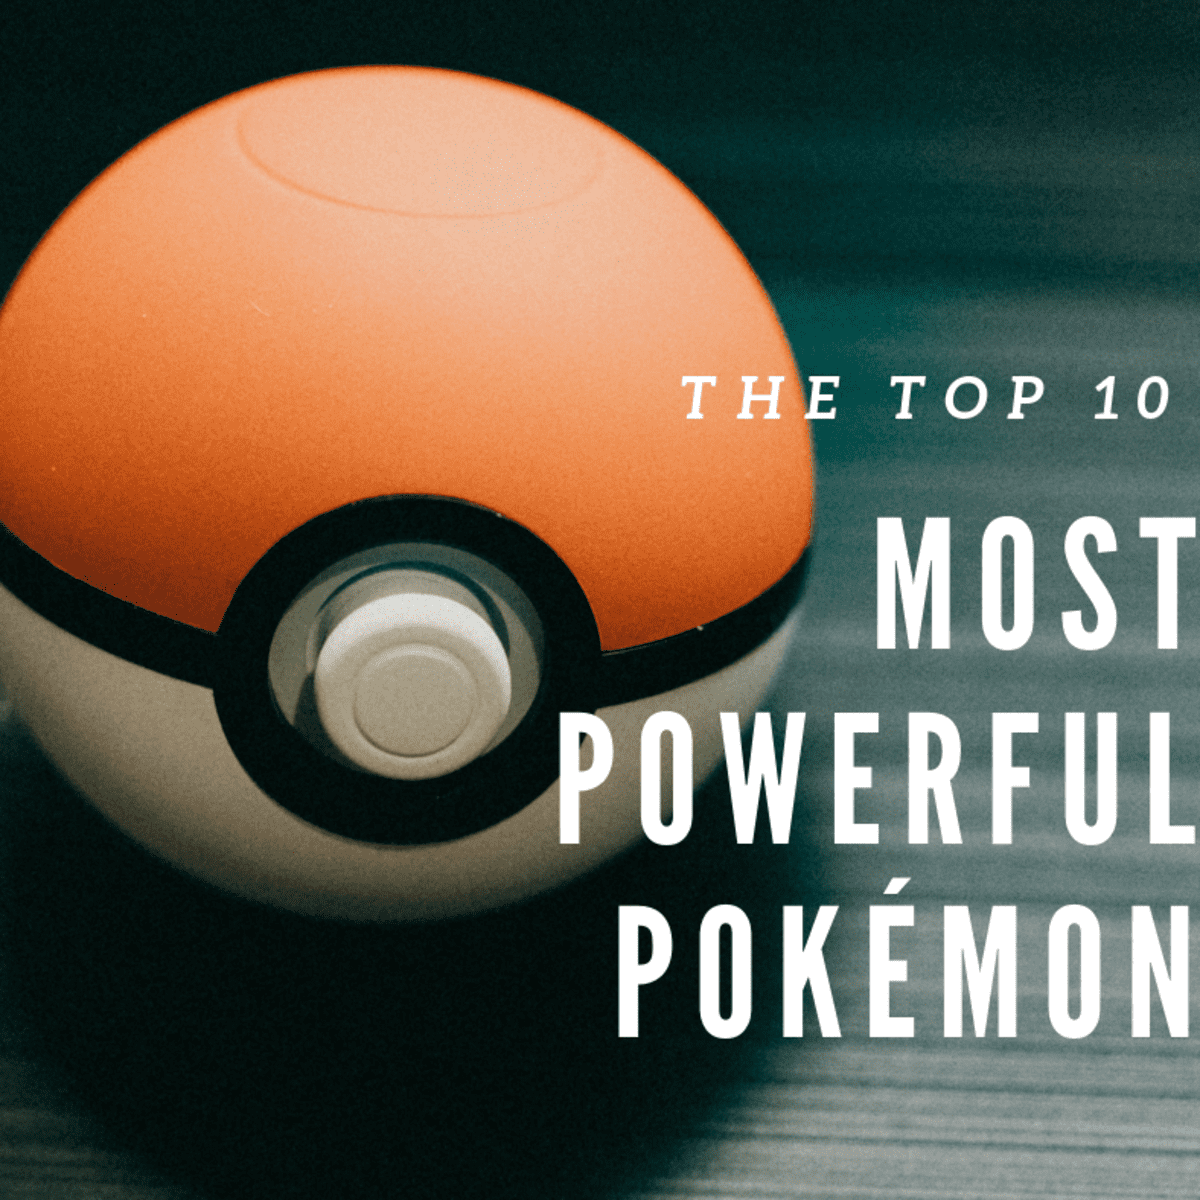 Top 10 Strongest Unova Pokémon - HubPages